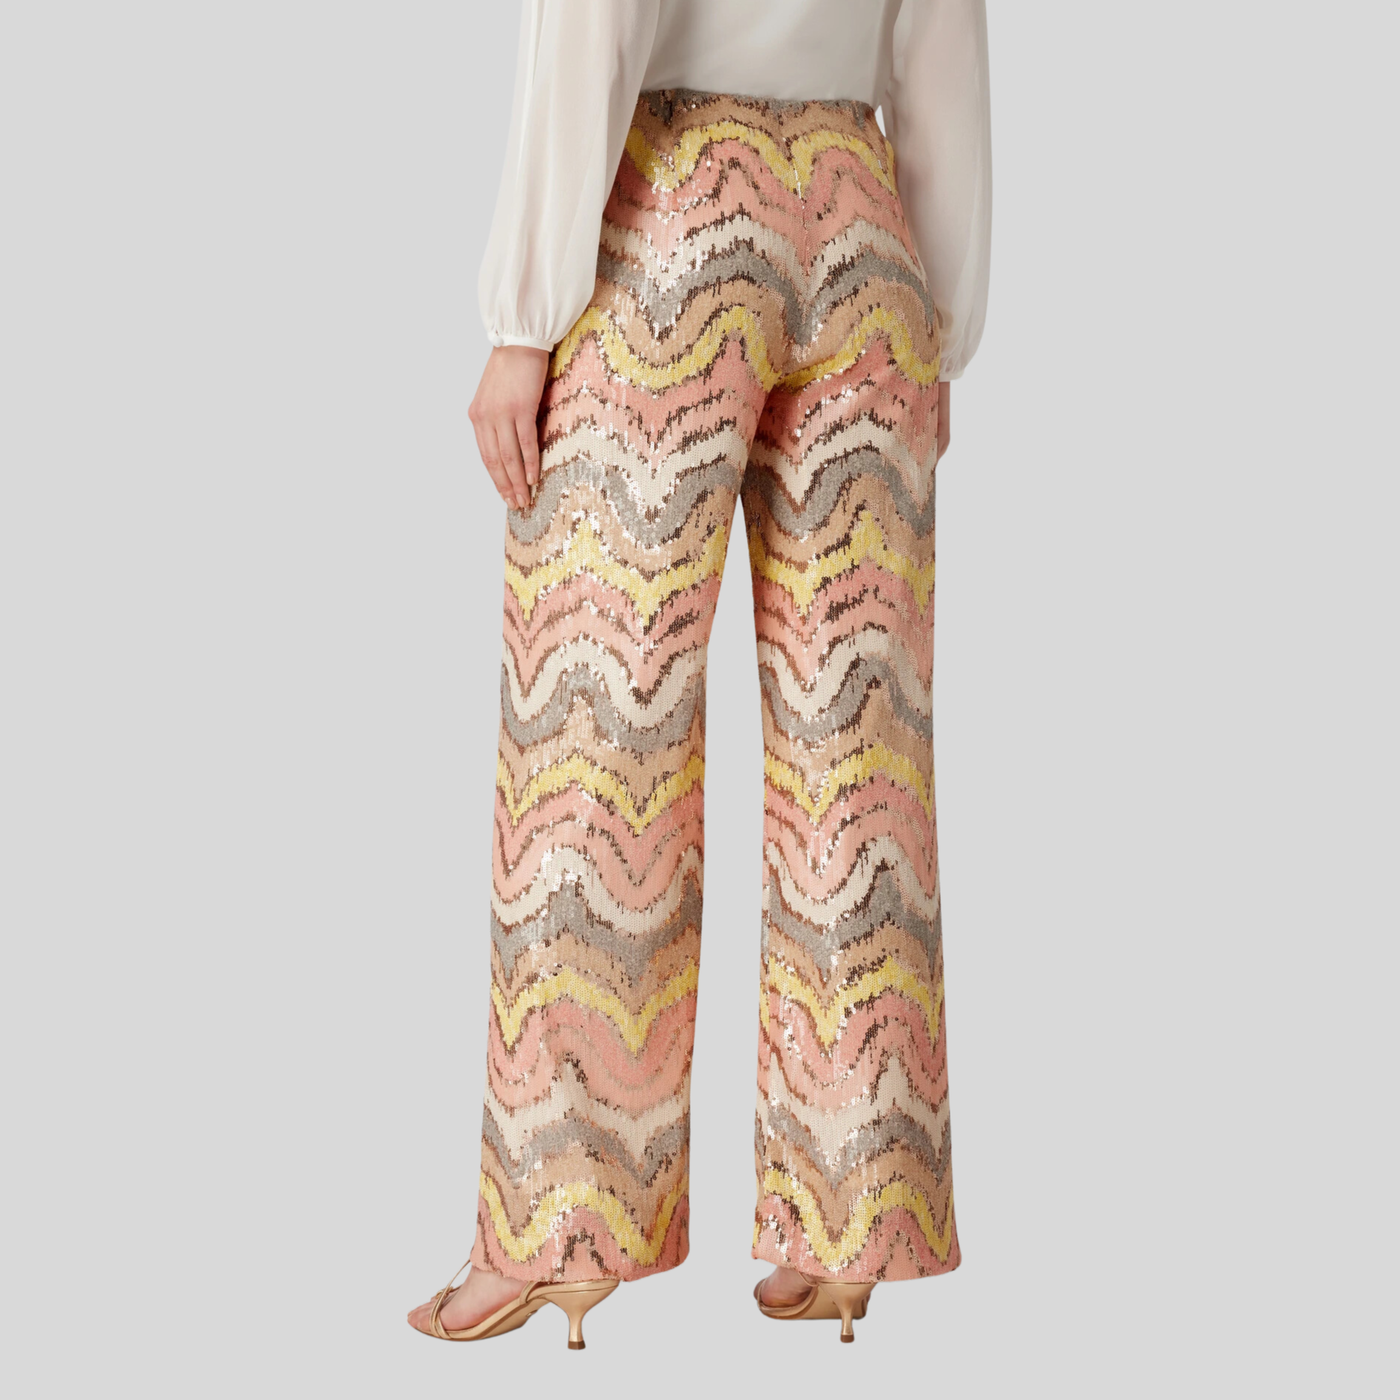 Gotstyle Fashion - Seductive Pants Sequin Wave Pattern Wide Leg Pants - Multi